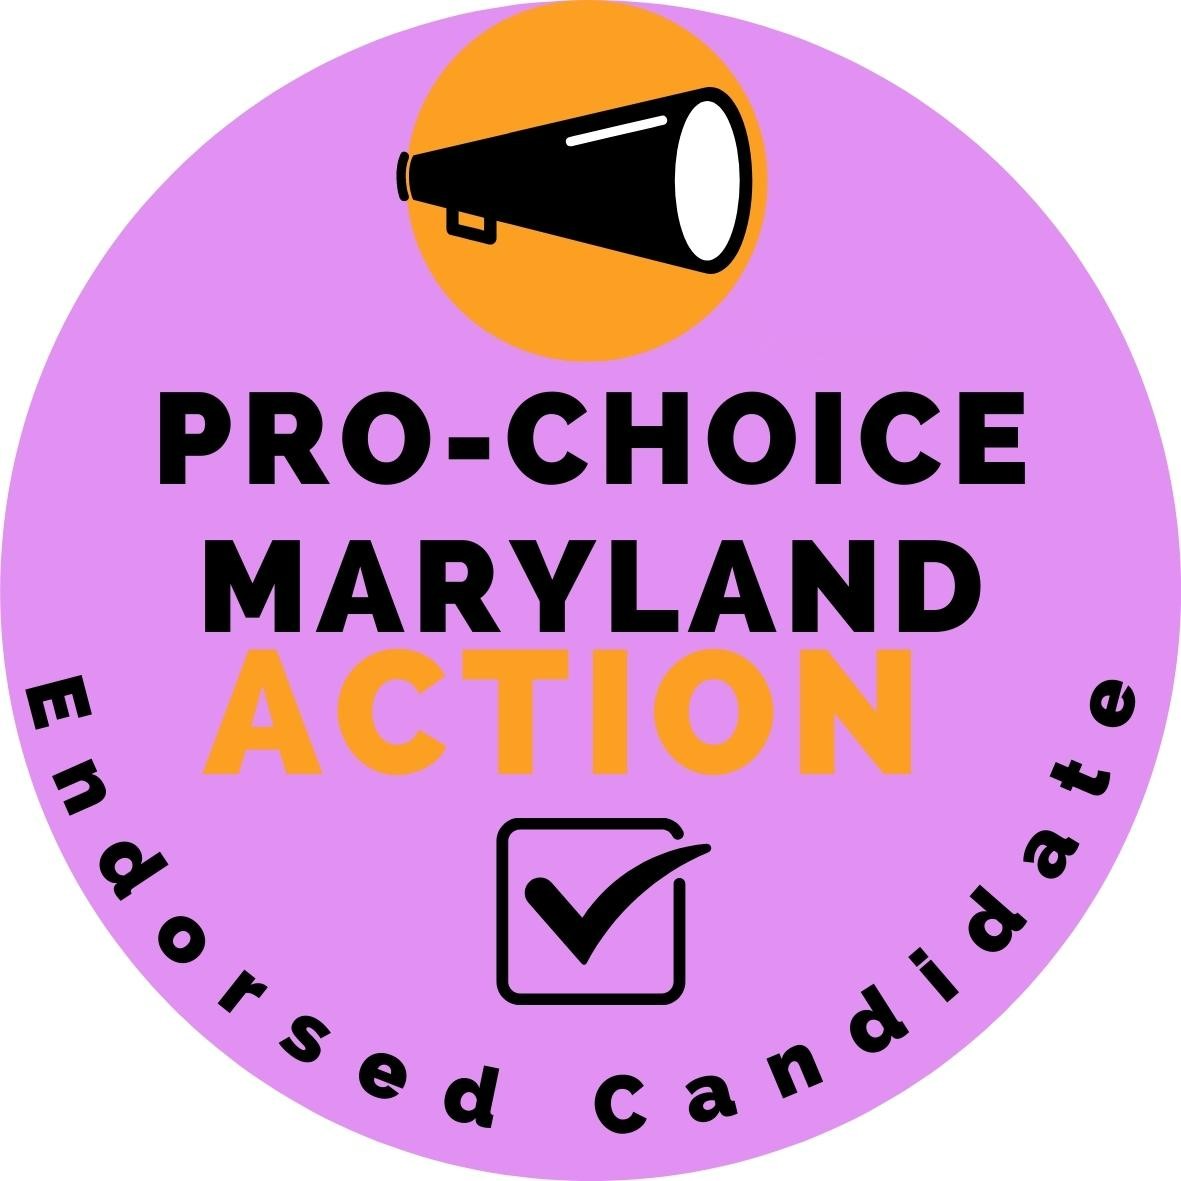 Pro-Choice Maryland